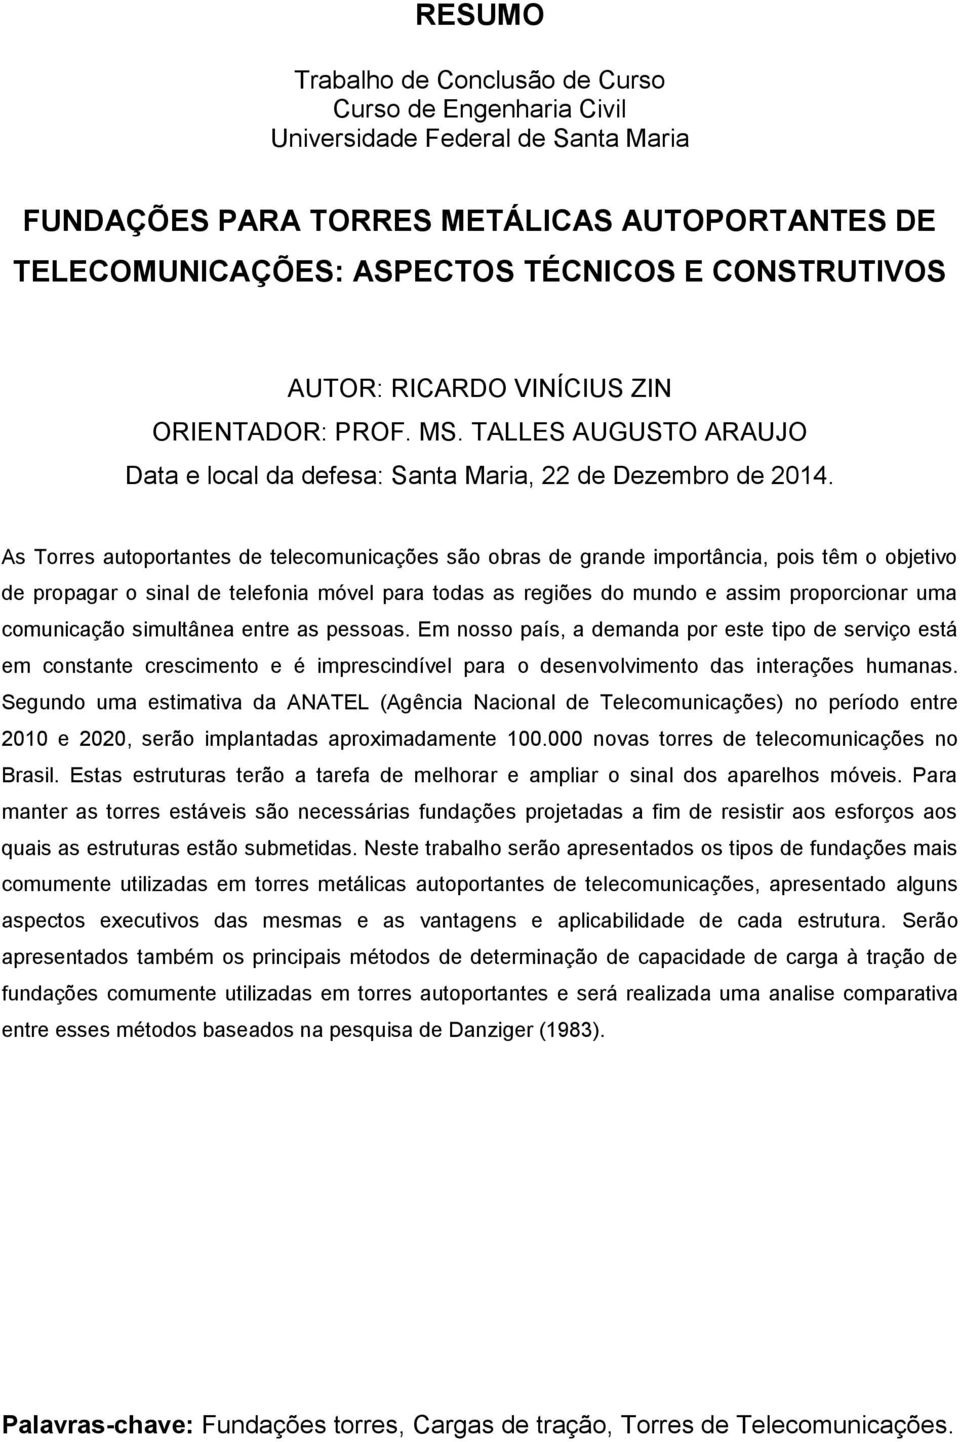 As Torres autoportantes de telecomunicações são obras de grande importância, pois têm o objetivo de propagar o sinal de telefonia móvel para todas as regiões do mundo e assim proporcionar uma